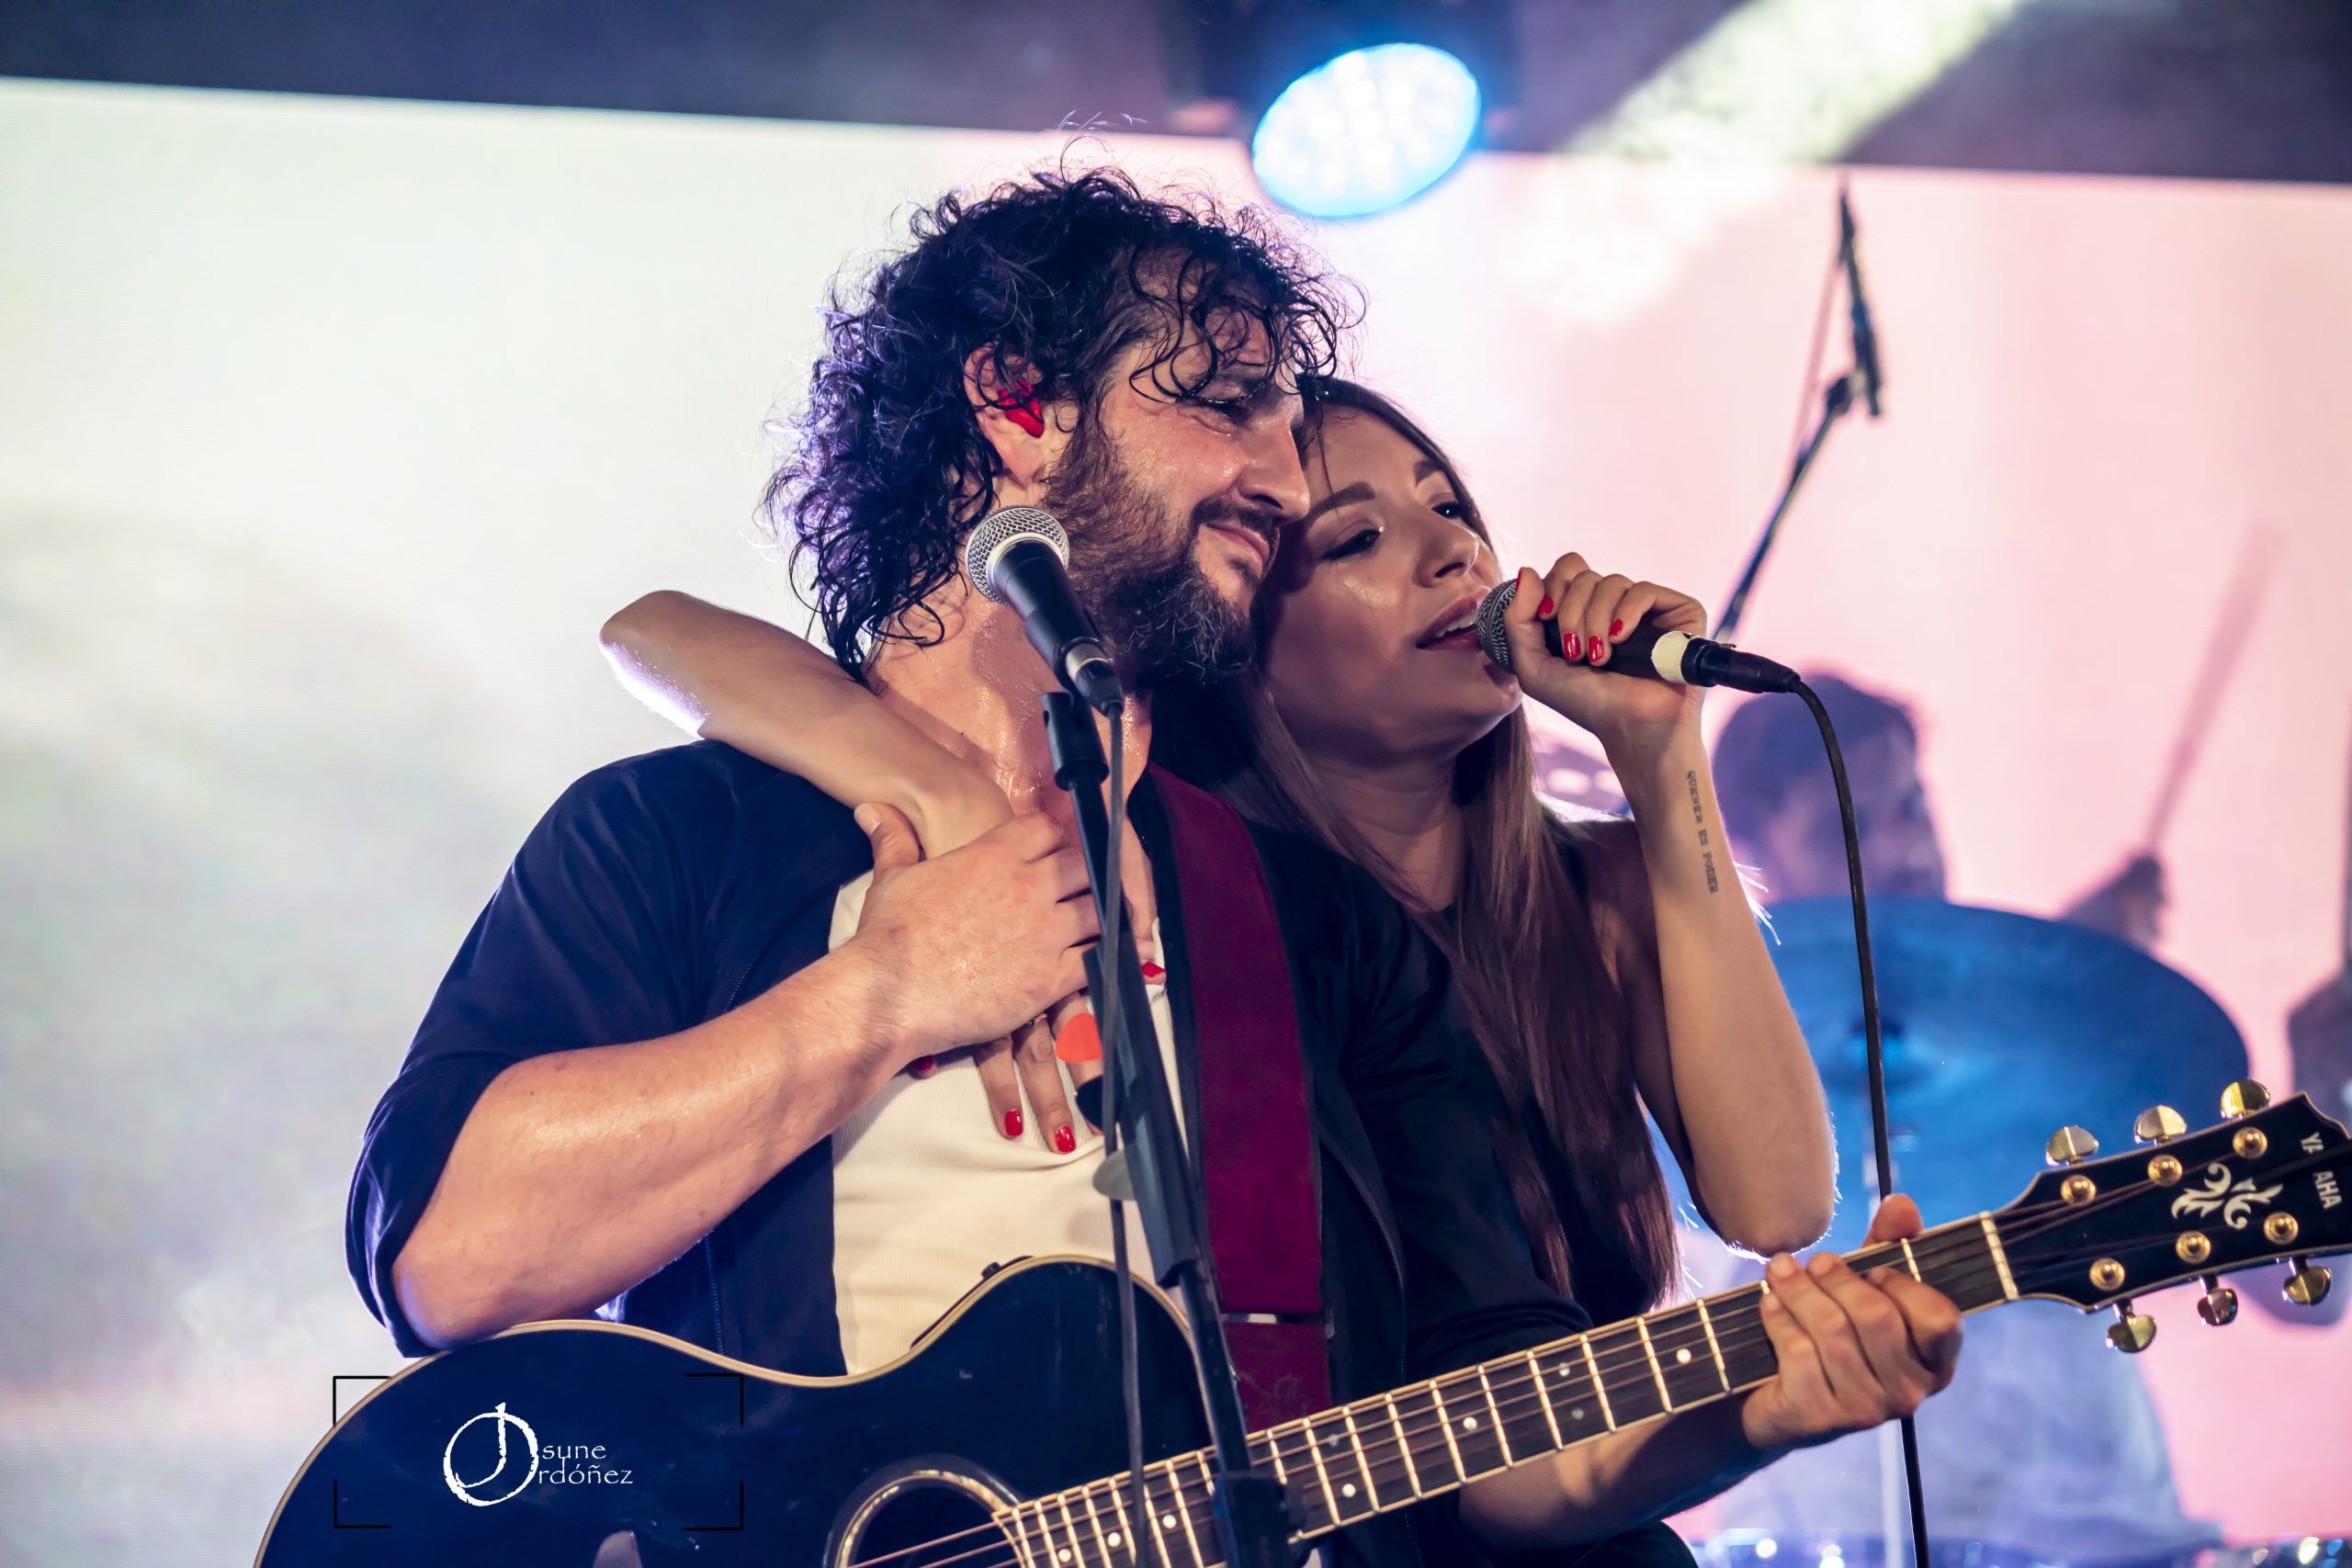 Ana Guerra y Fran Perea, gira «1 más 1 son 20» en la sala Mon Live en Madrid. Fotografía por Josune Ordóñez